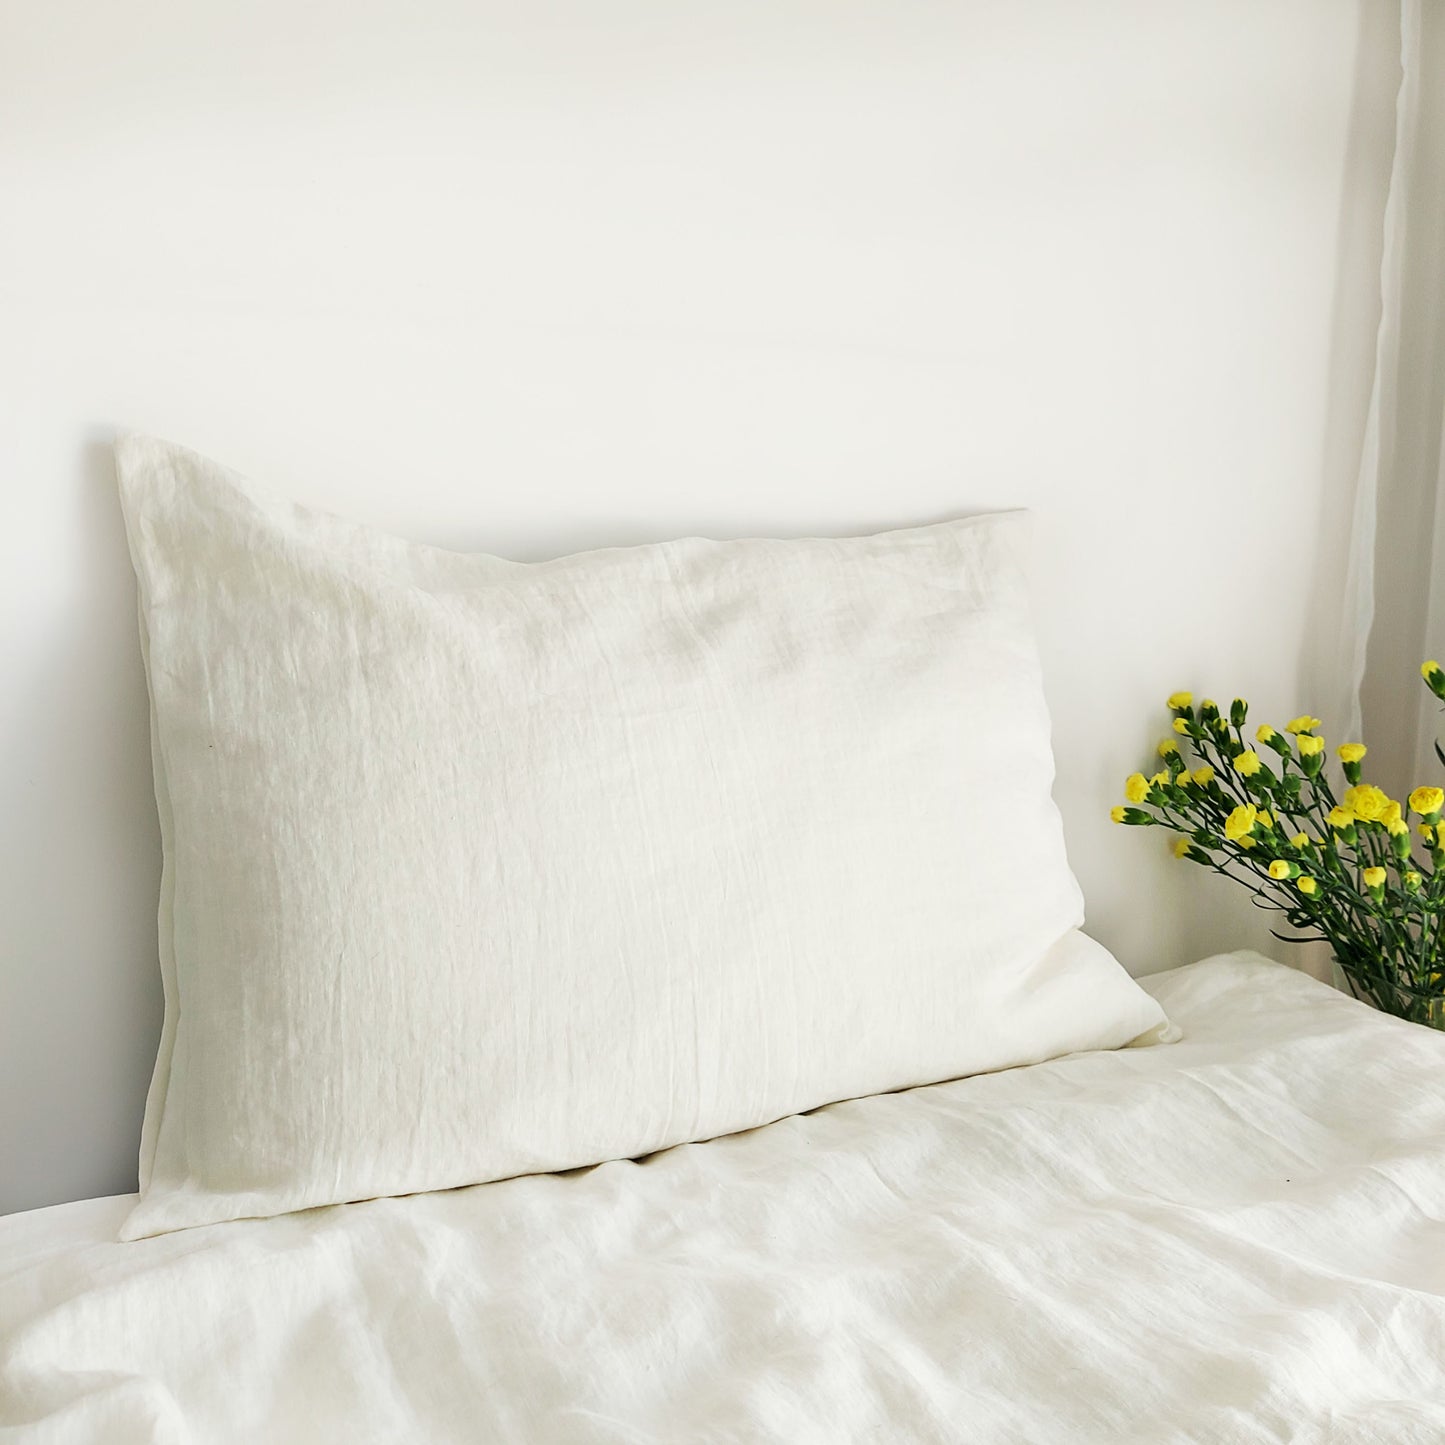 Linen Bedding Set in Ecru Color, Stonewashed Linen